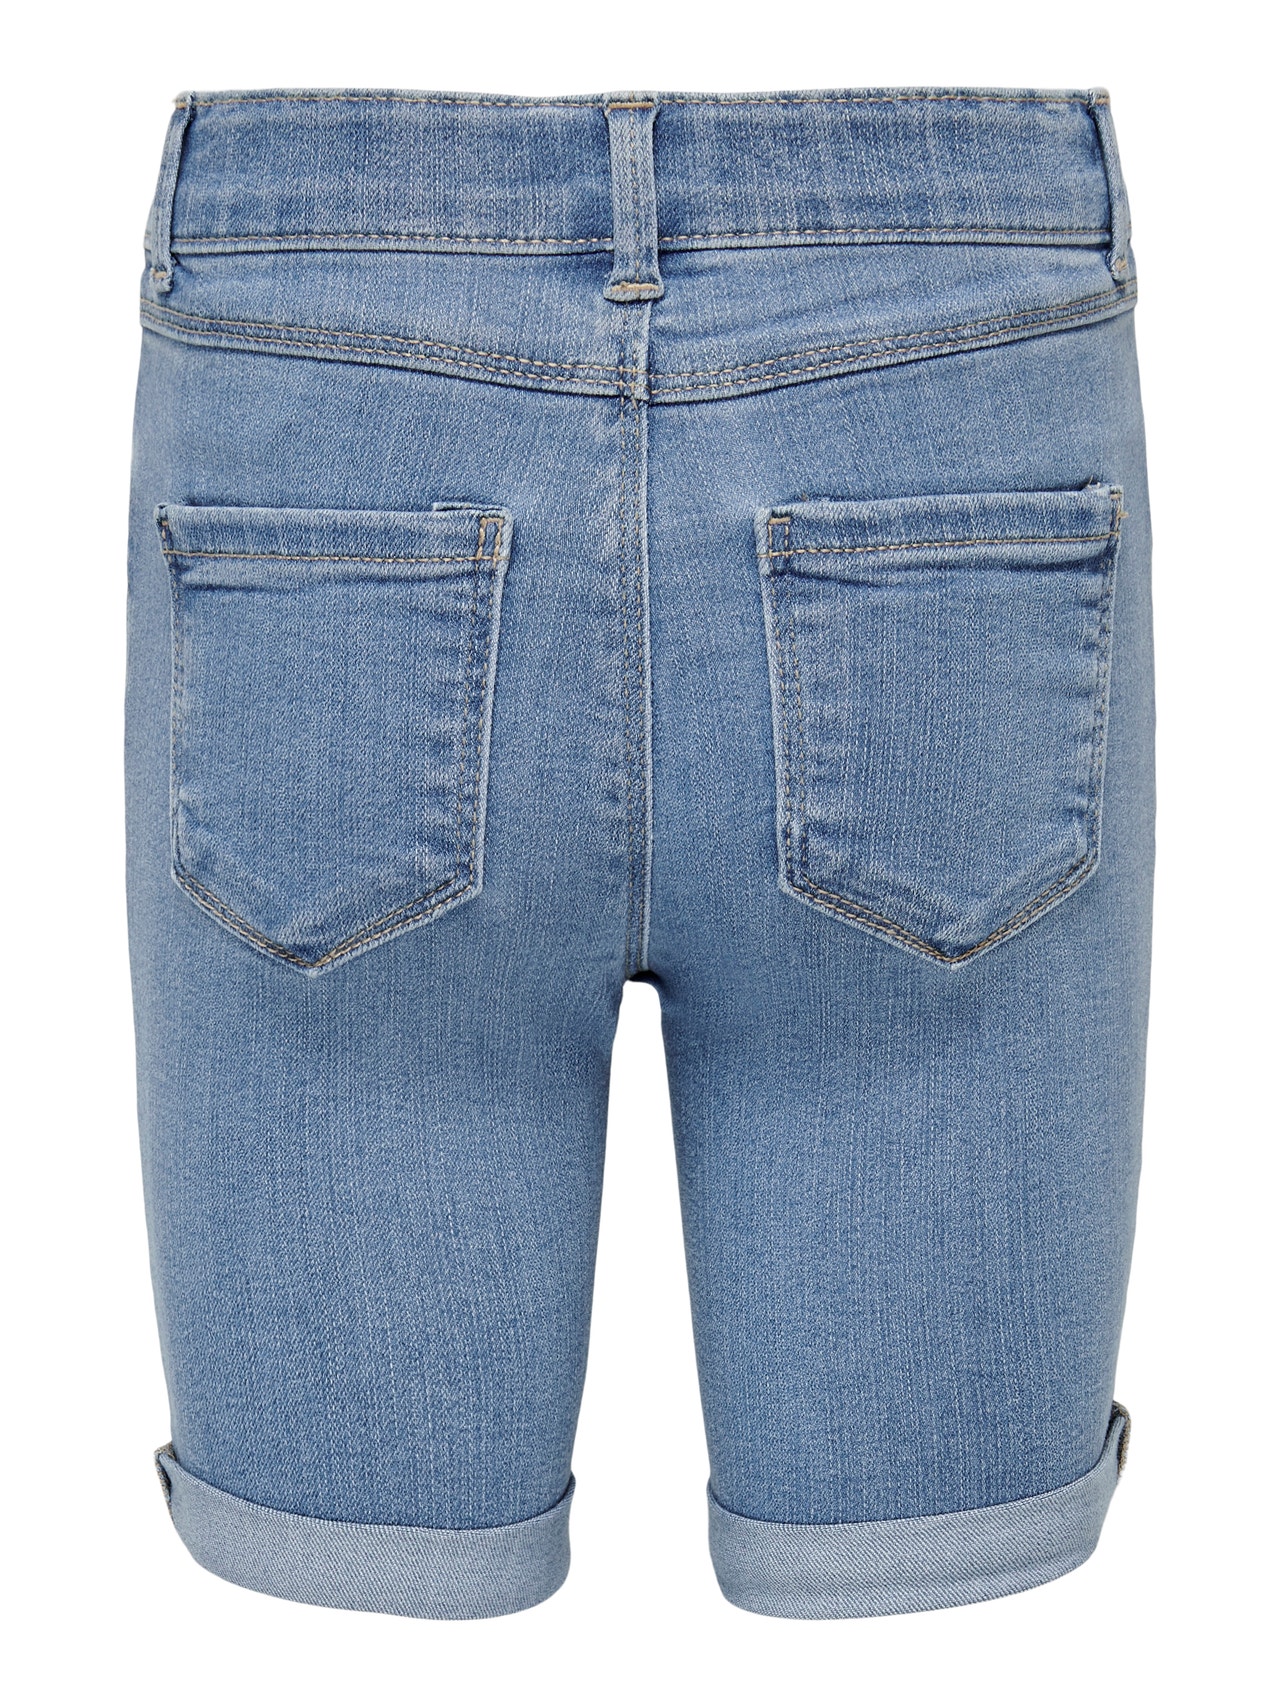 ONLY Skinny Fit Säume zum Umschlagen Shorts -Medium Blue Denim - 15247604